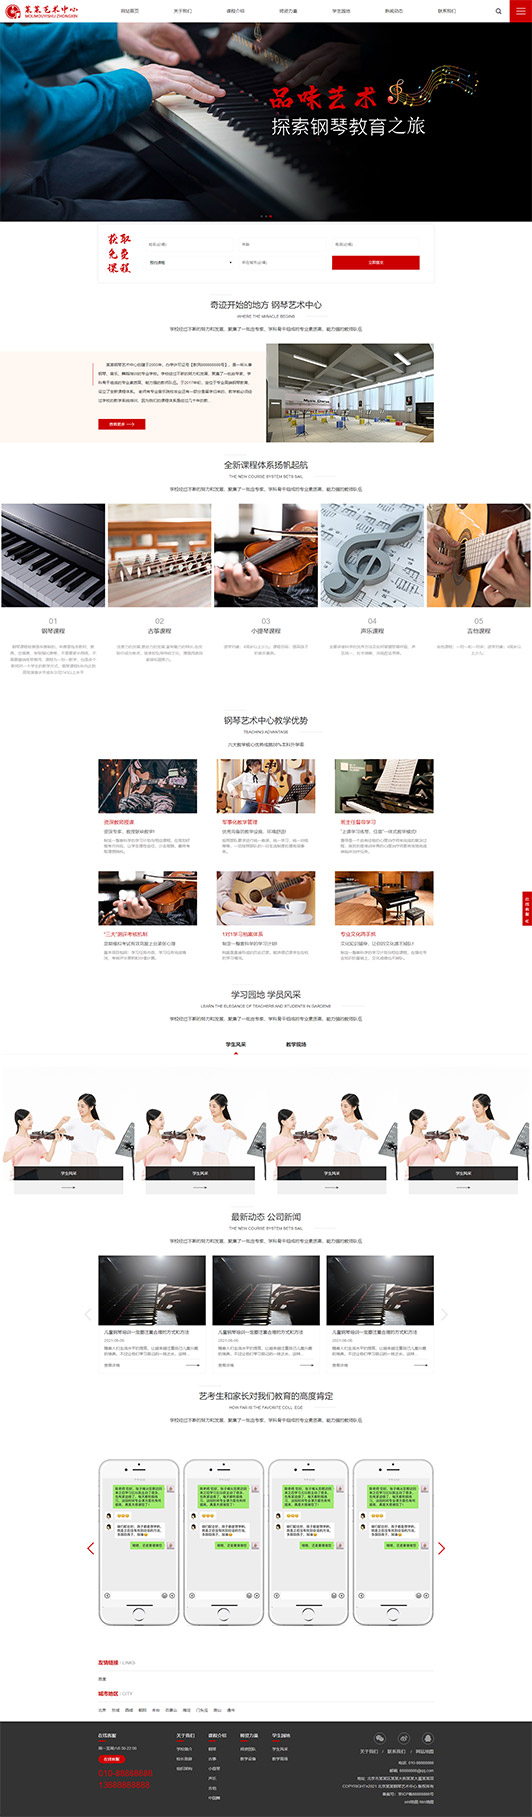 泰安钢琴艺术培训公司响应式企业网站